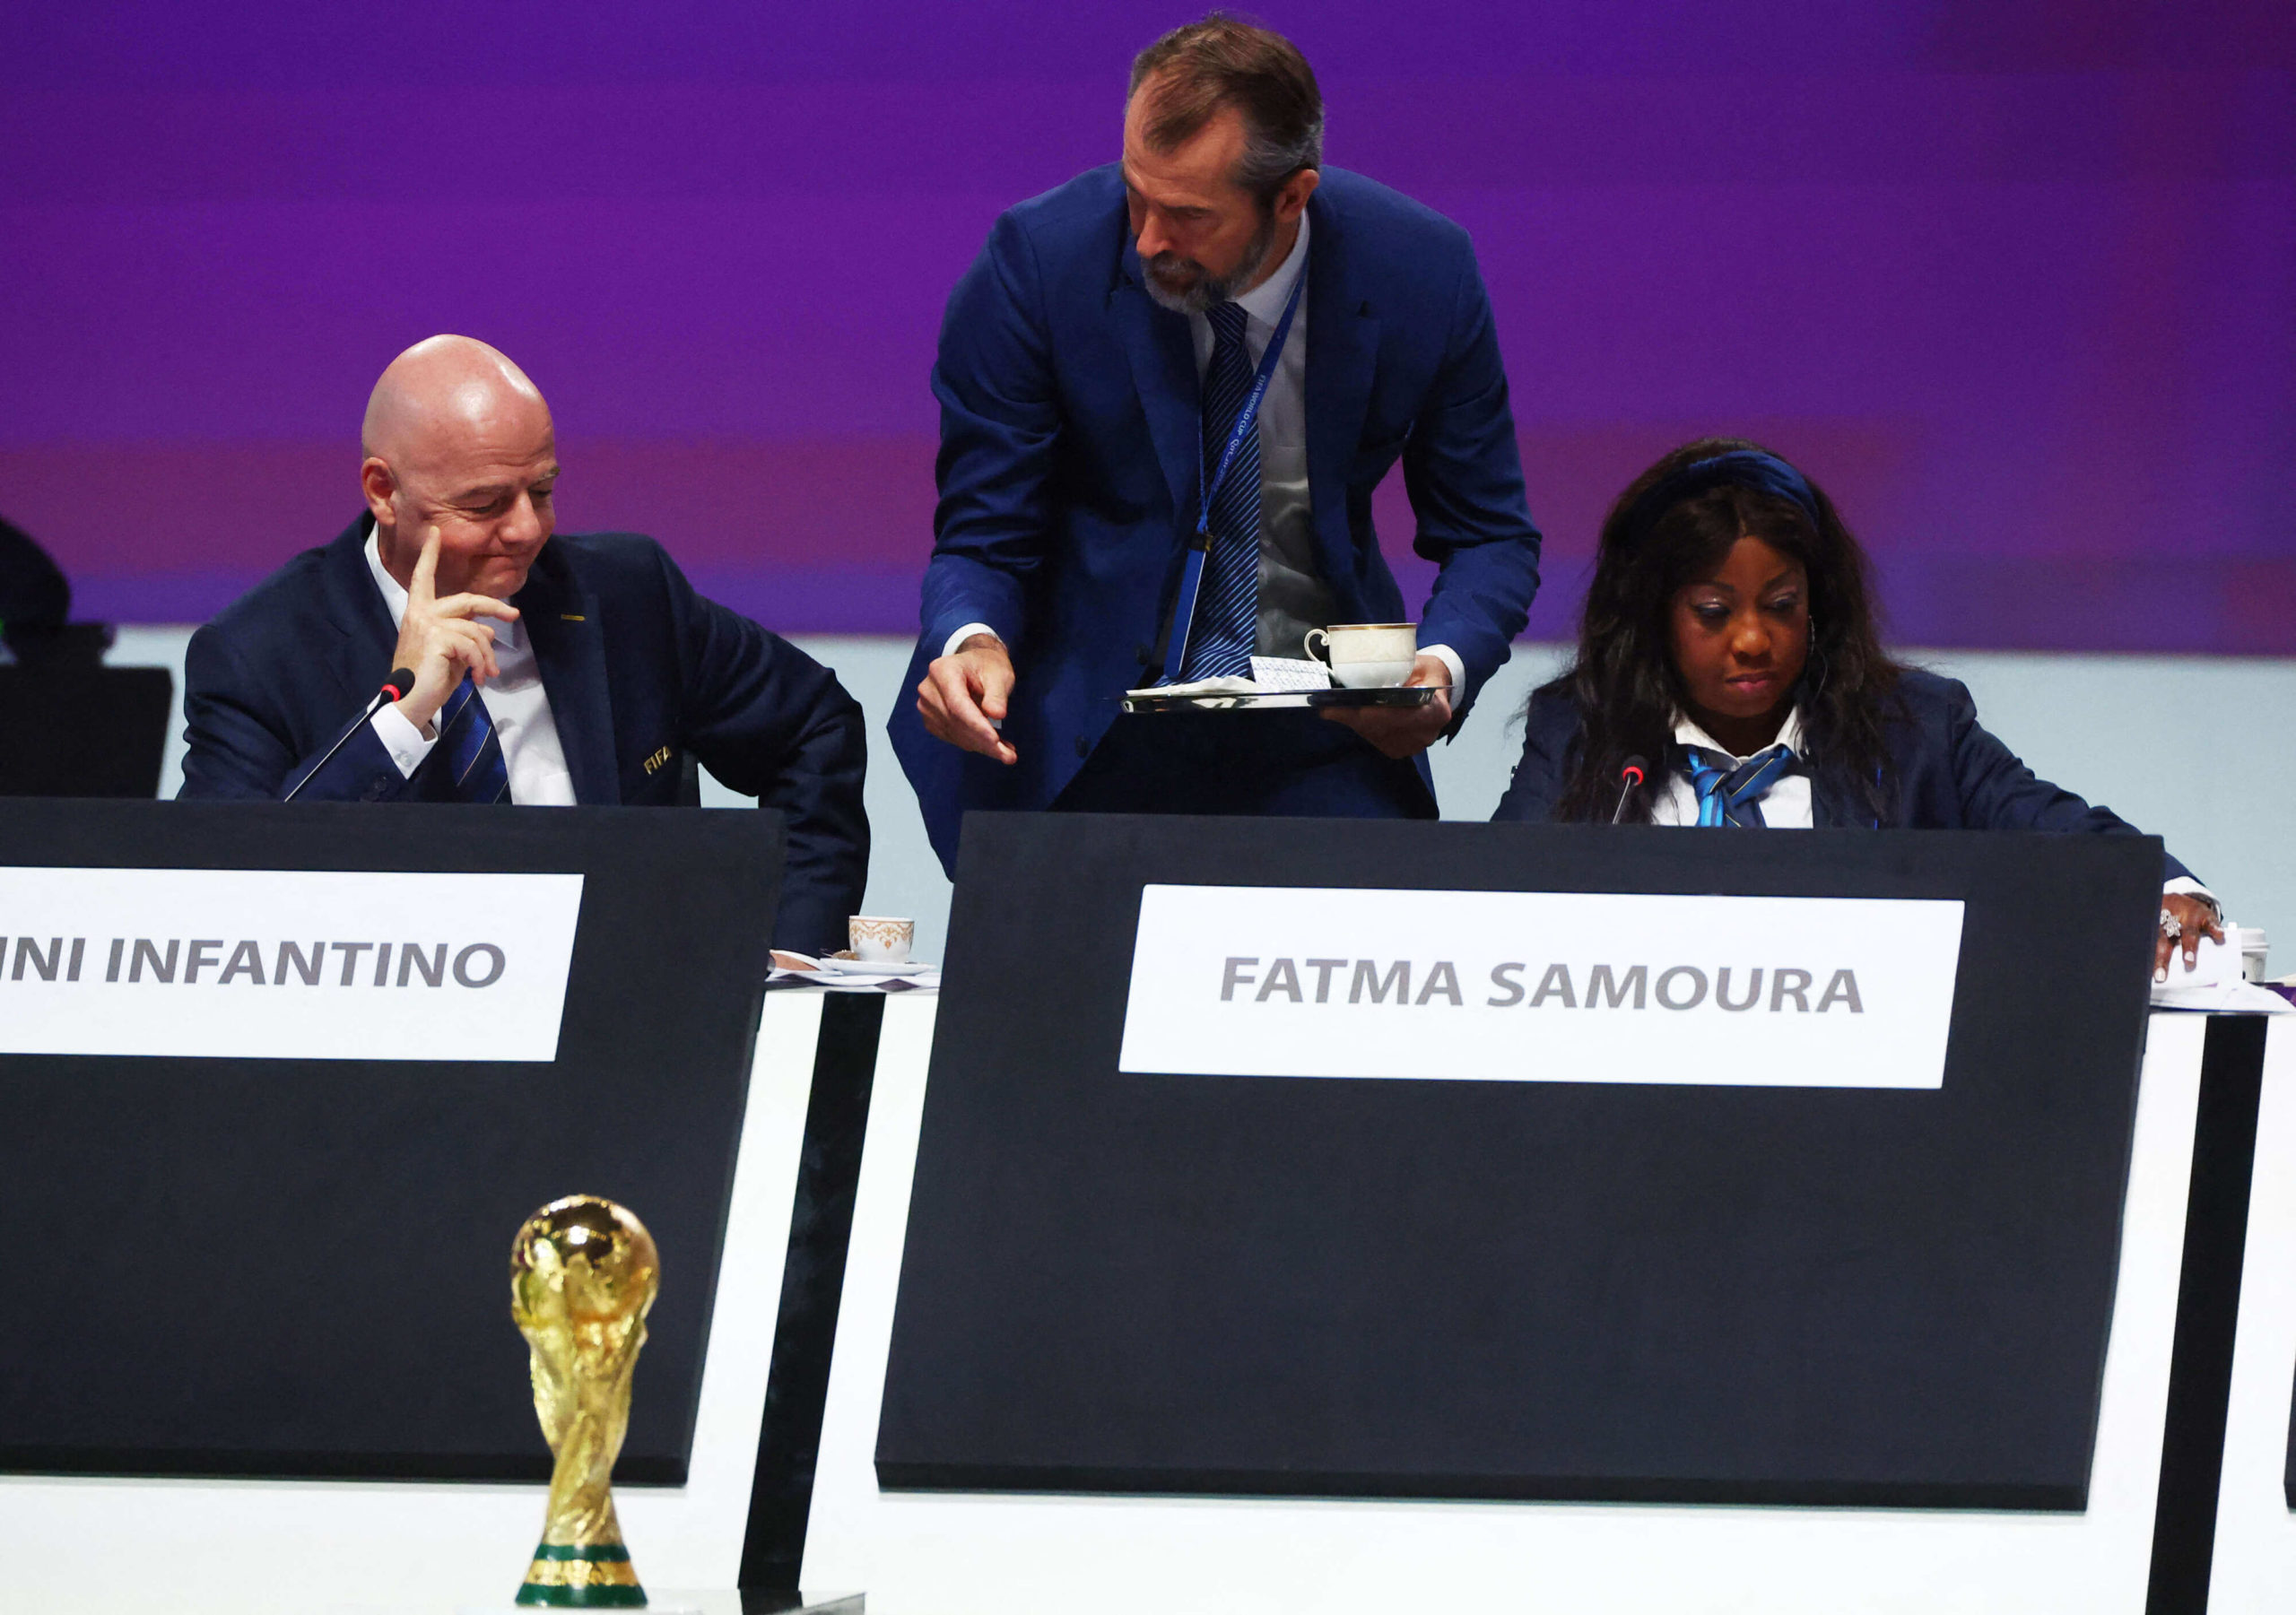 الاتحاد الدولي لكرة القدم (الفيفا) يواجه معارضة شديدة لإقامة كأس العالم كل عامين